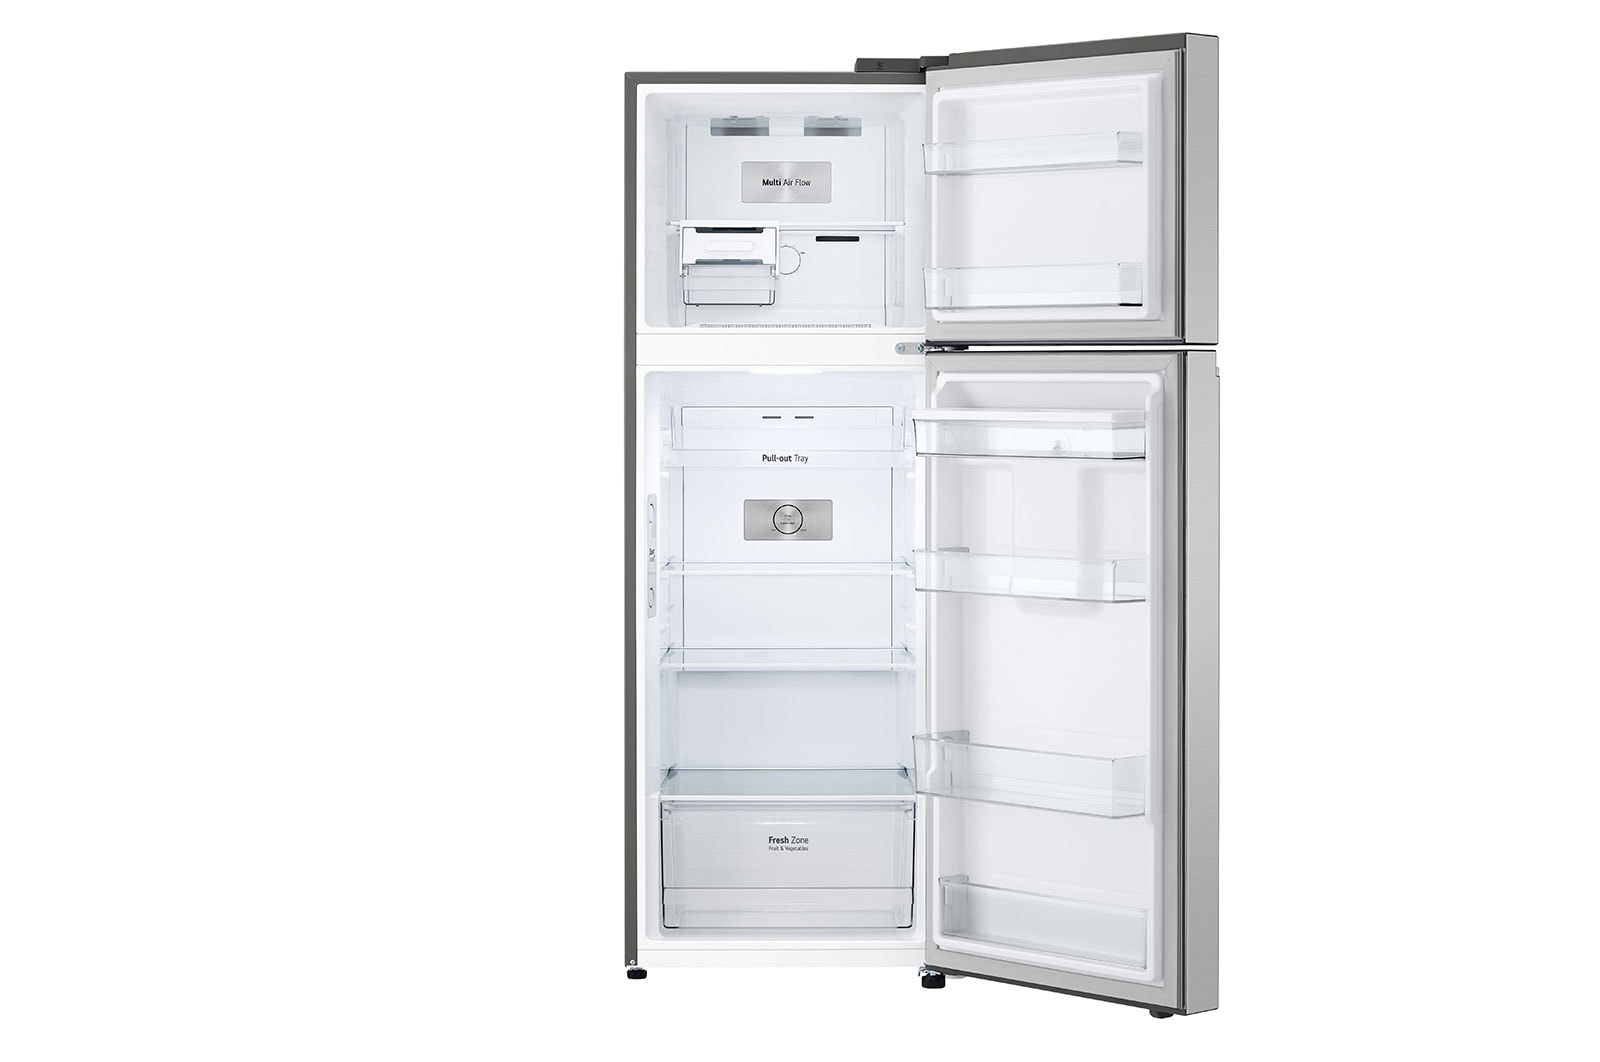 LG Smart Inverter 314L Tủ lạnh ngăn đá trên với công nghệ Door Cooling (Bạc), ngăn kéo bên trong có trái cây, GN-D312PS